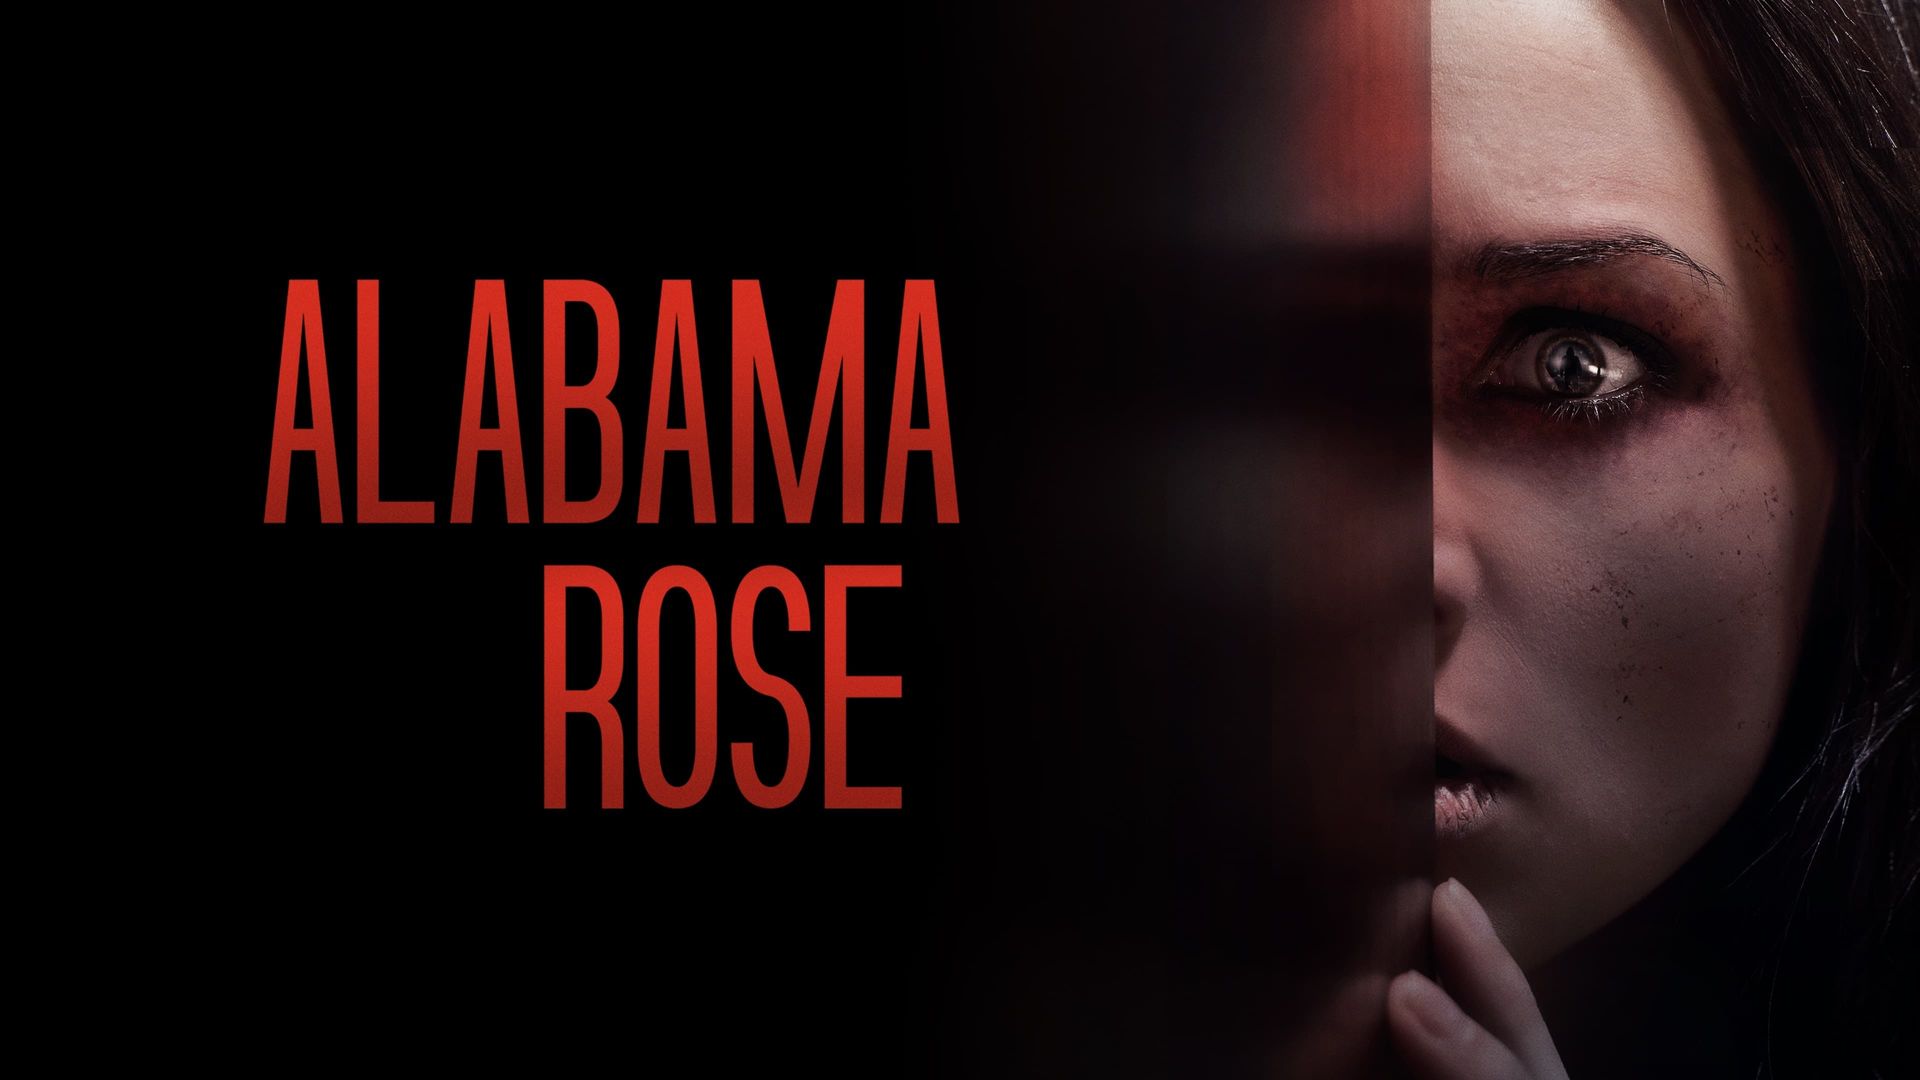 Alabama Rose background